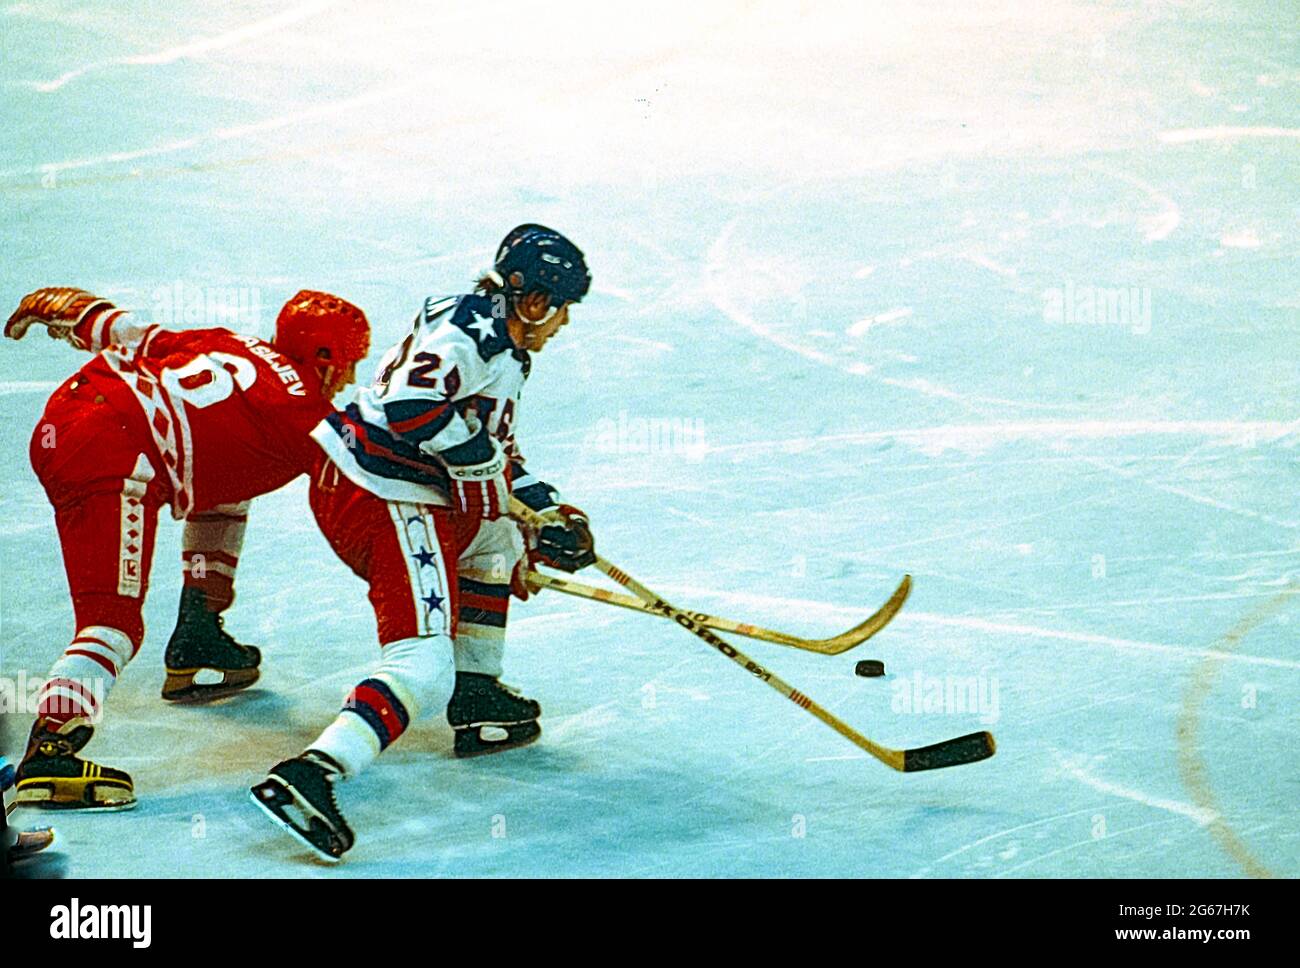 Rob McClanahan de Team USA et Valeri Vasiliev (URSS) lors de la demi-finale du hockey sur glace masculin aux Jeux Olympiques d'hiver de 1980. Banque D'Images